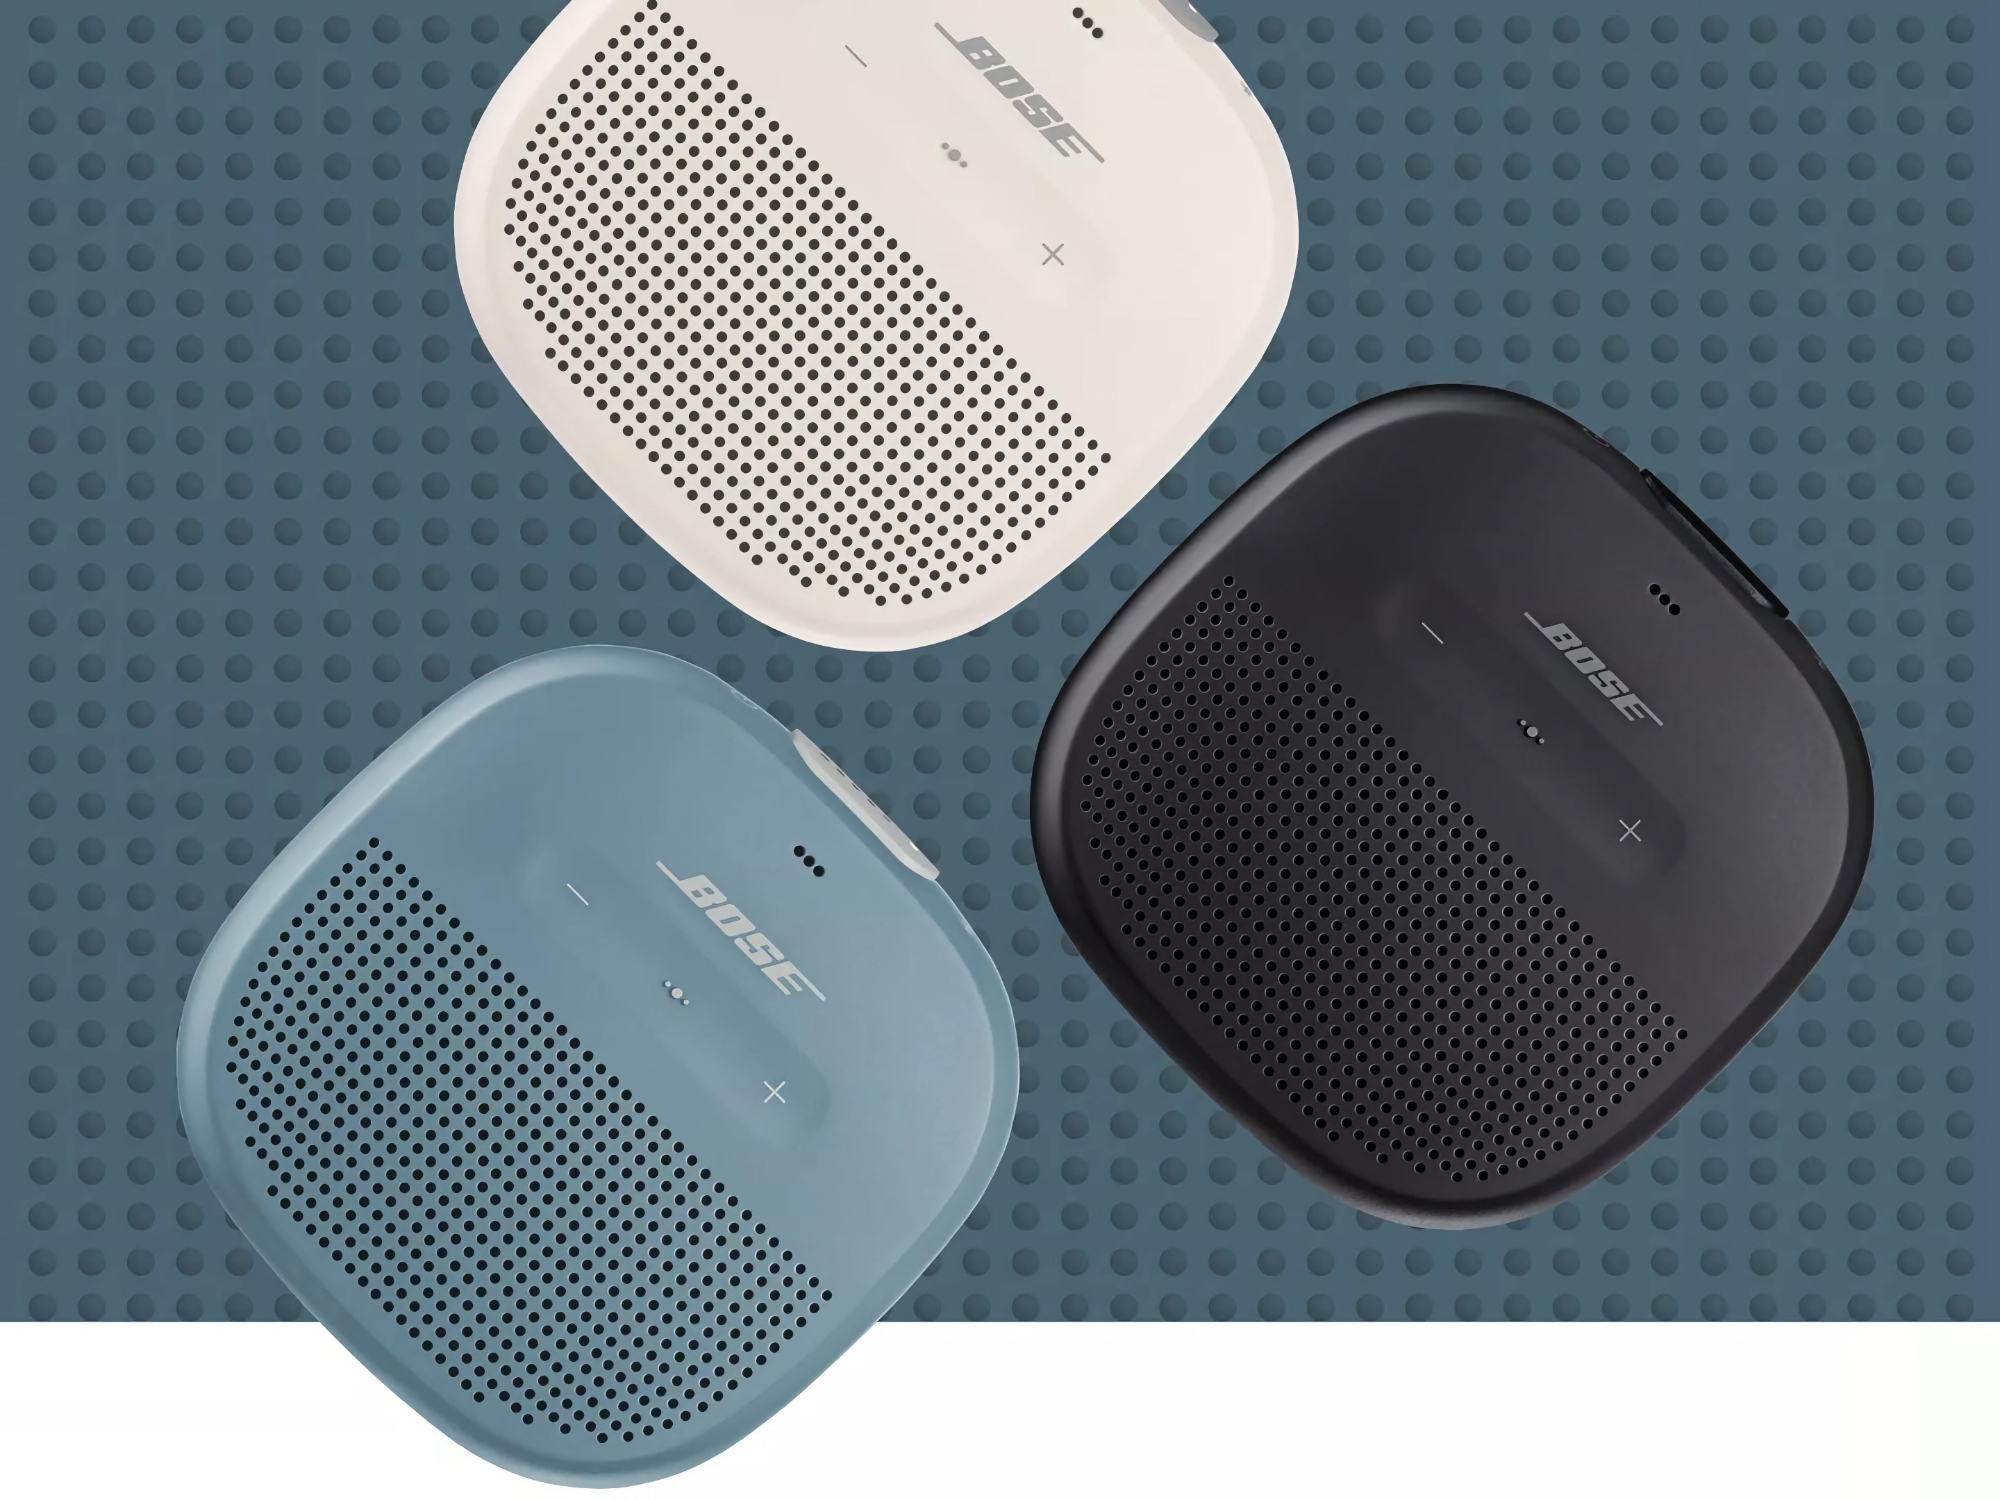 $20 Rabatt: Bose SoundLink Micro kann auf Amazon für $99 gekauft werden